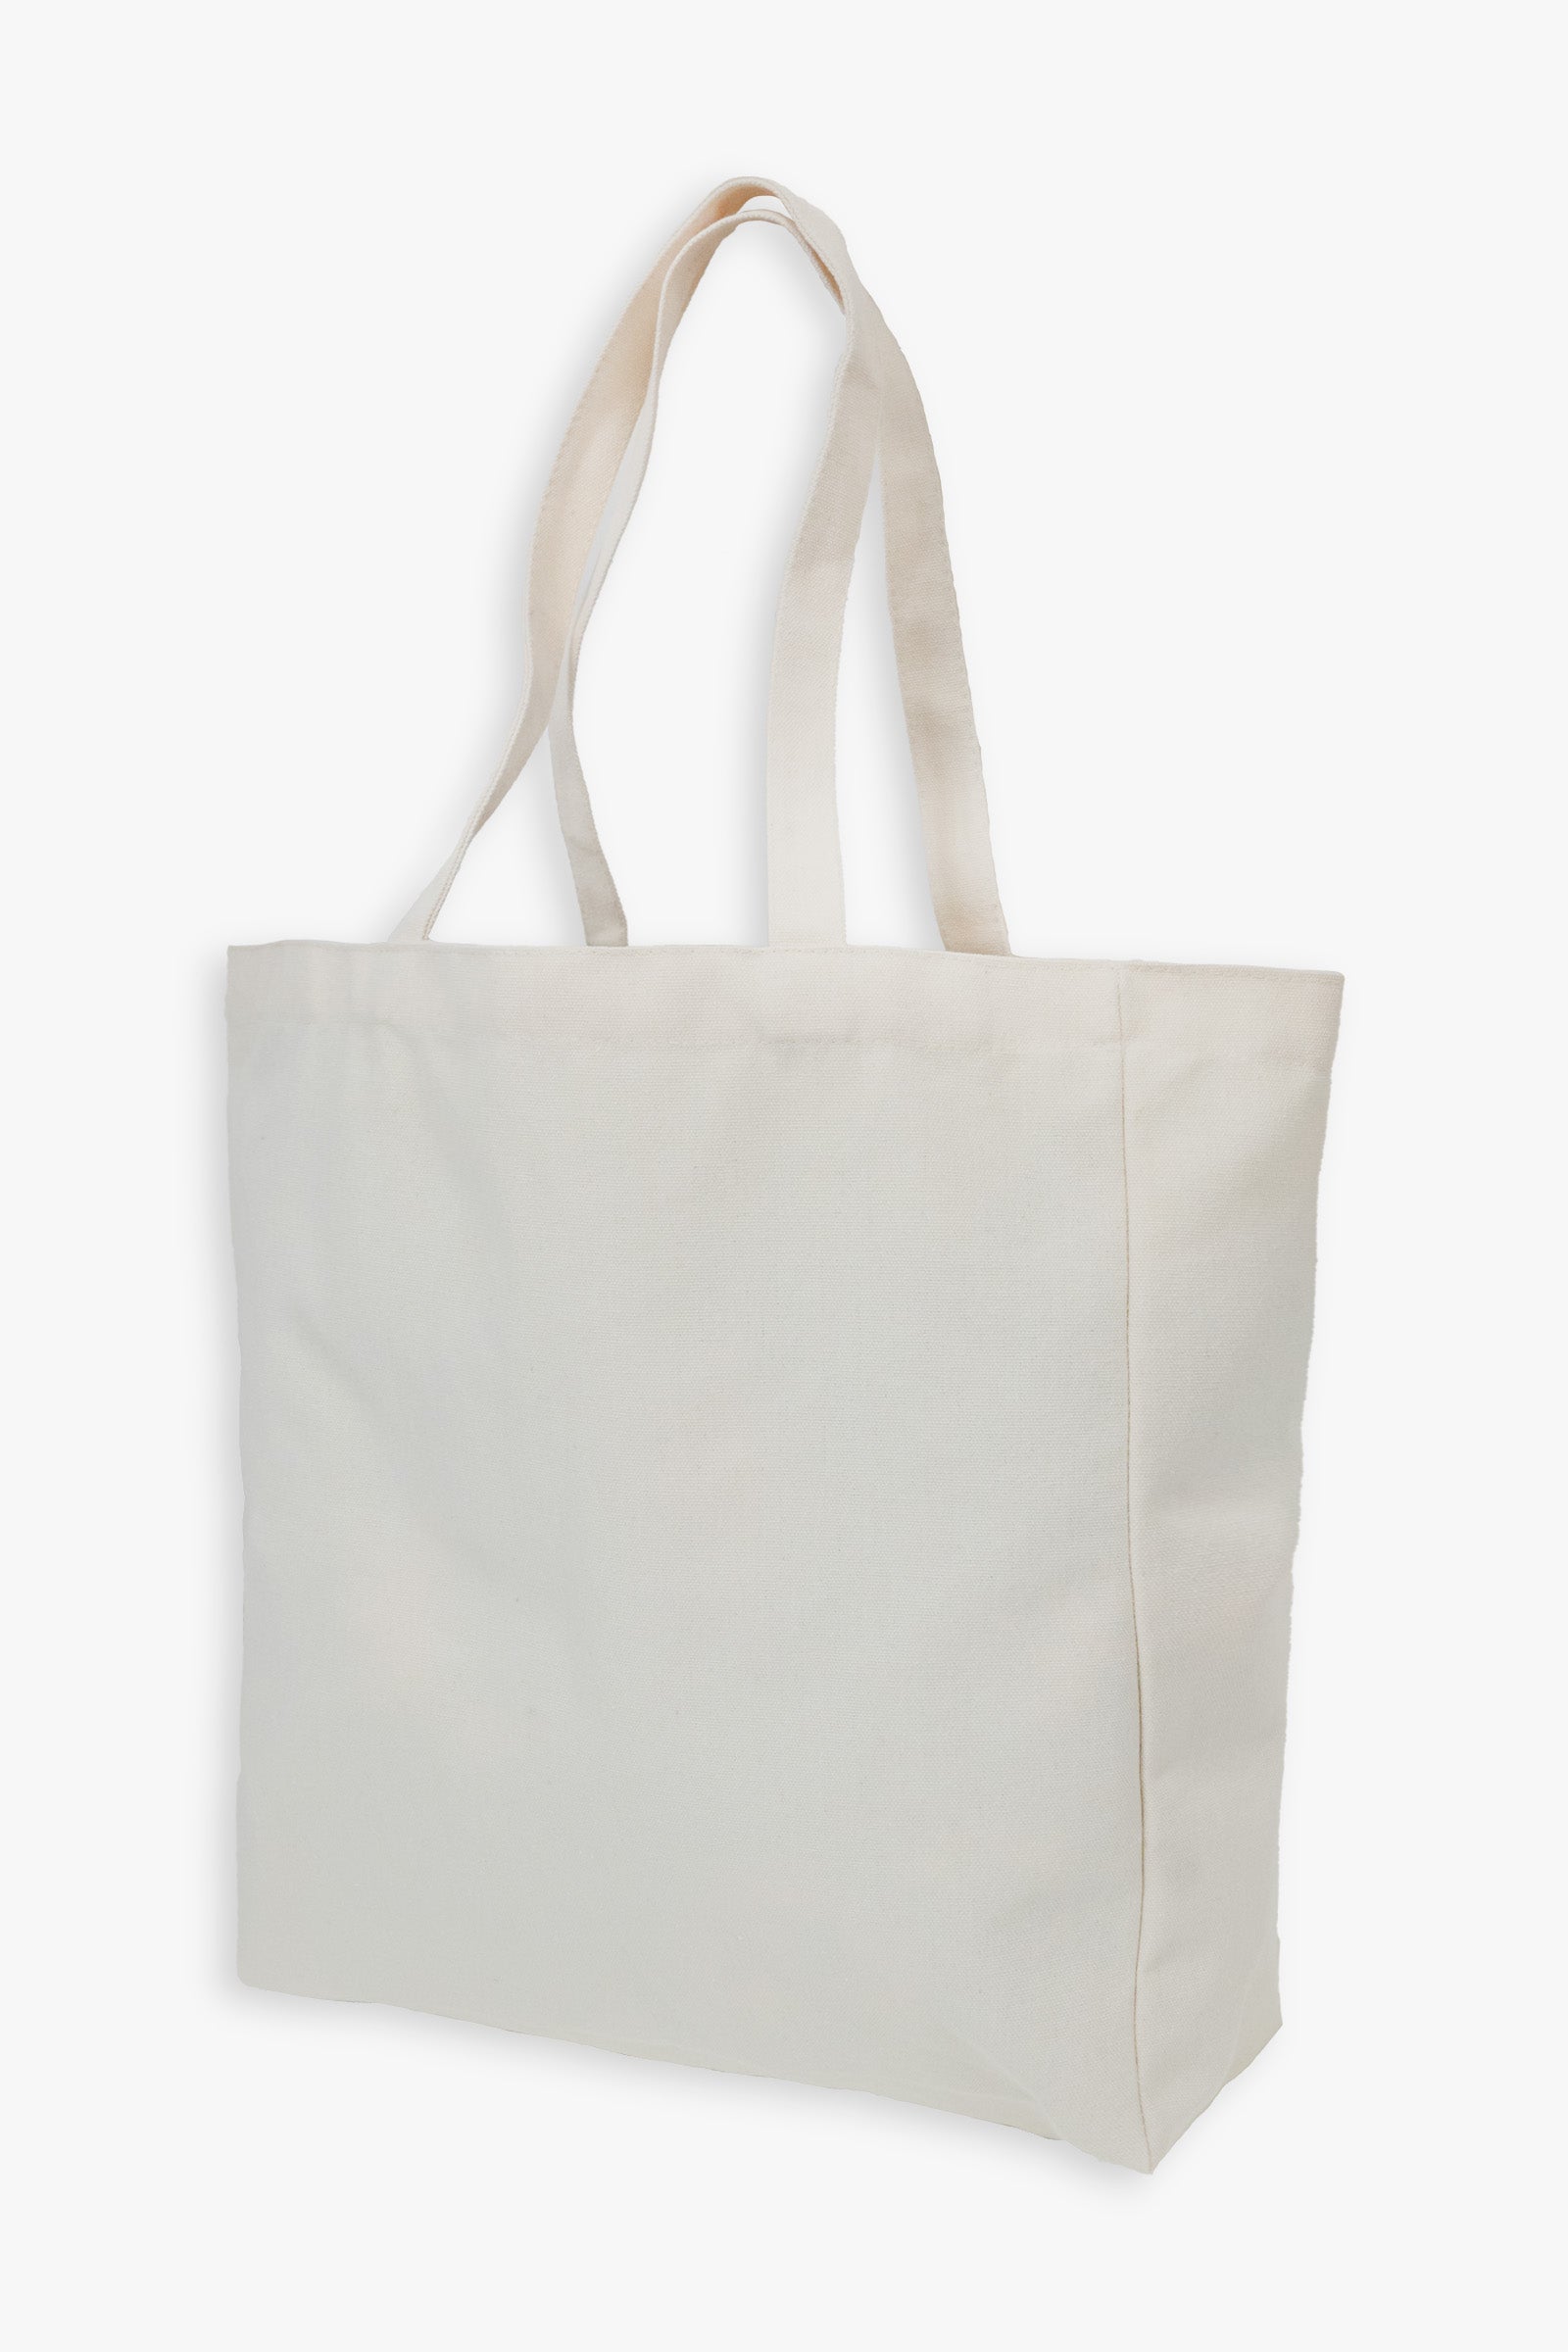 Gertex Customizable Tote Bag